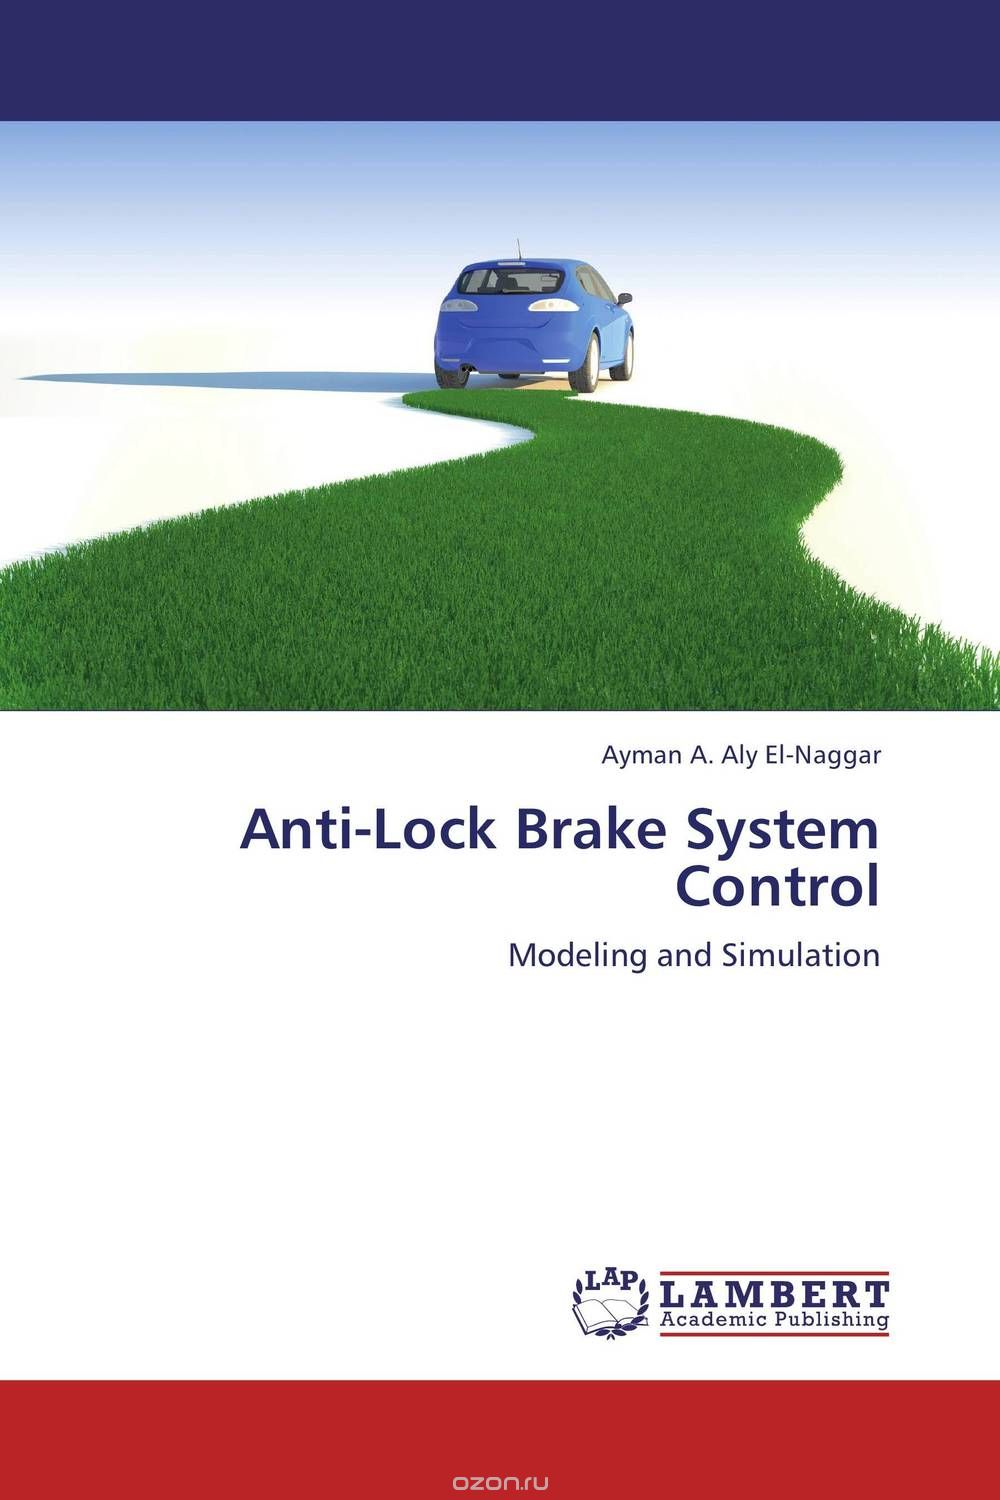 Скачать книгу "Anti-Lock Brake System Control"